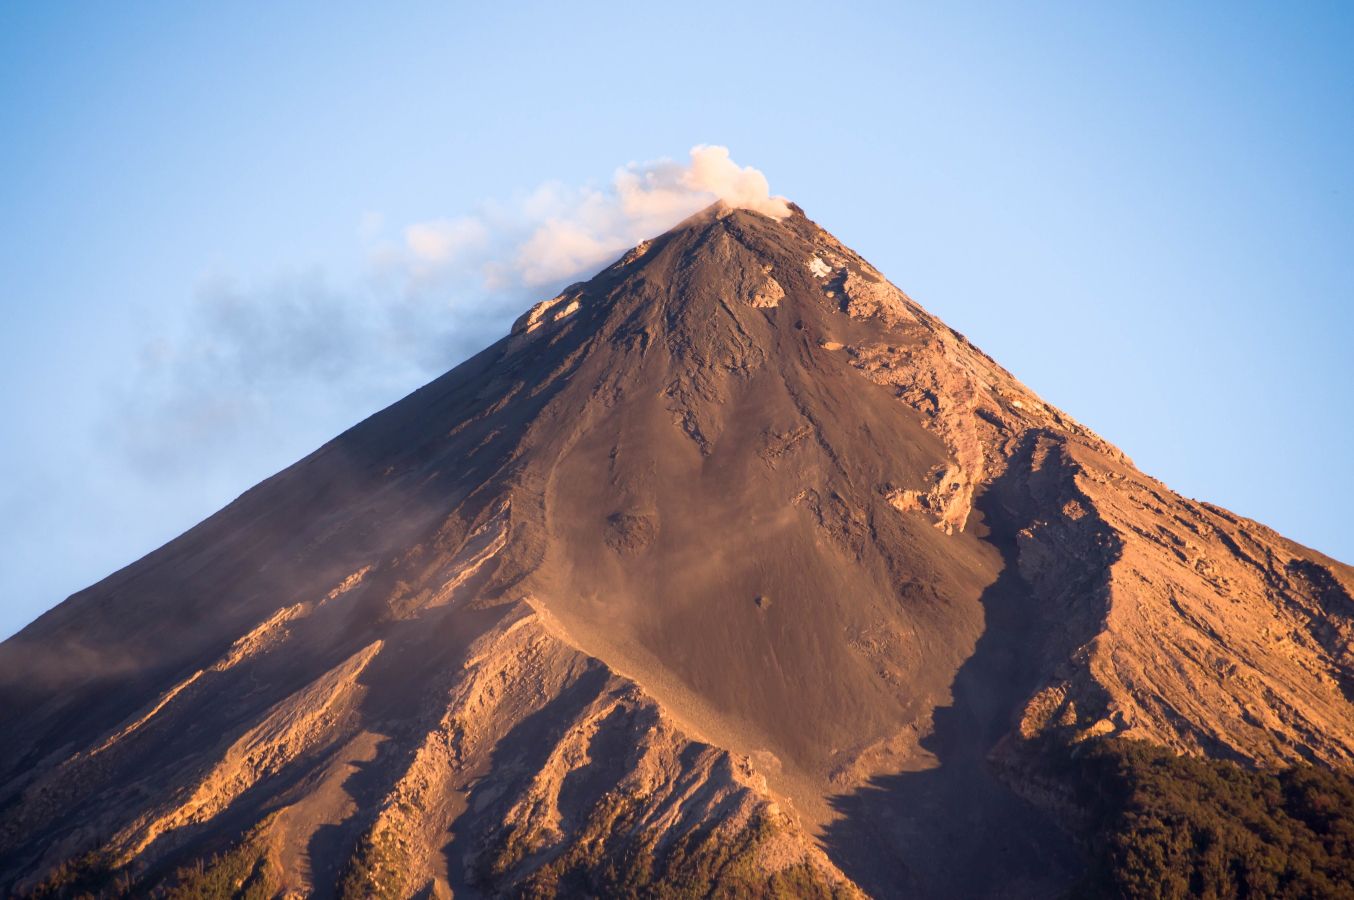 Guatemala, Volcan Acatenango and Volcan Fuego, Volcan de Fuego, Walkopedia